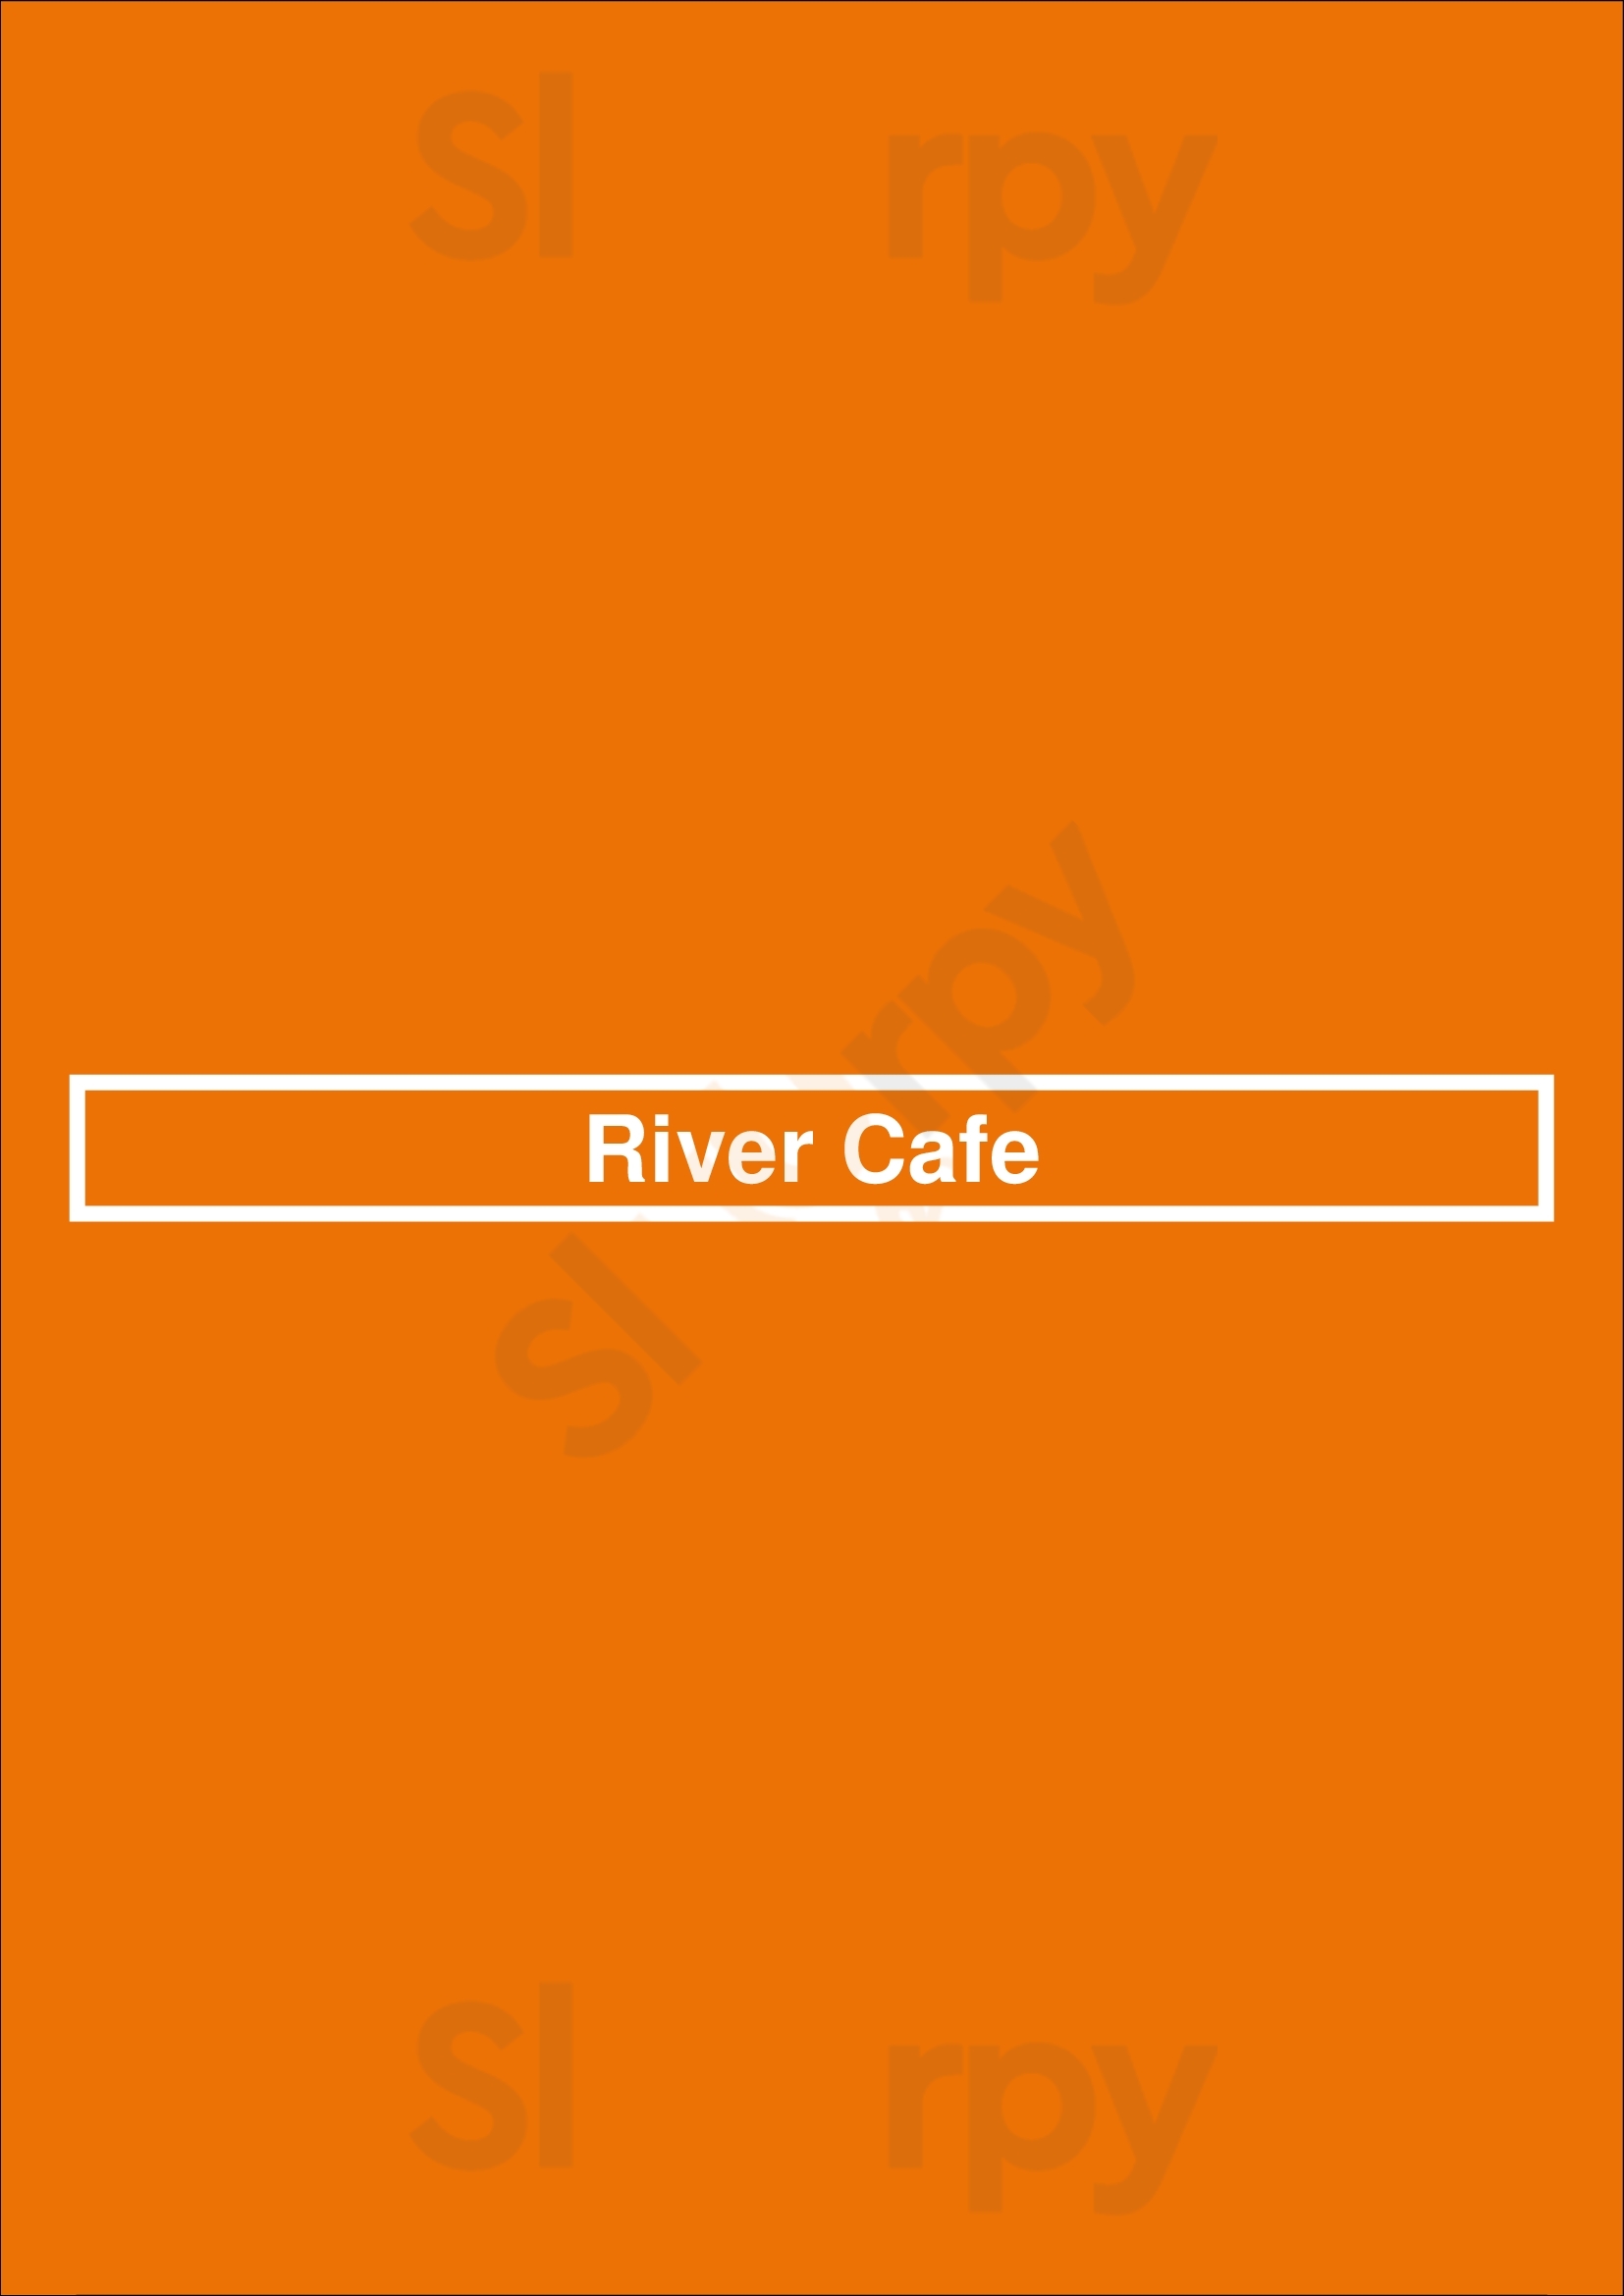 River Cafe Calgary Menu - 1